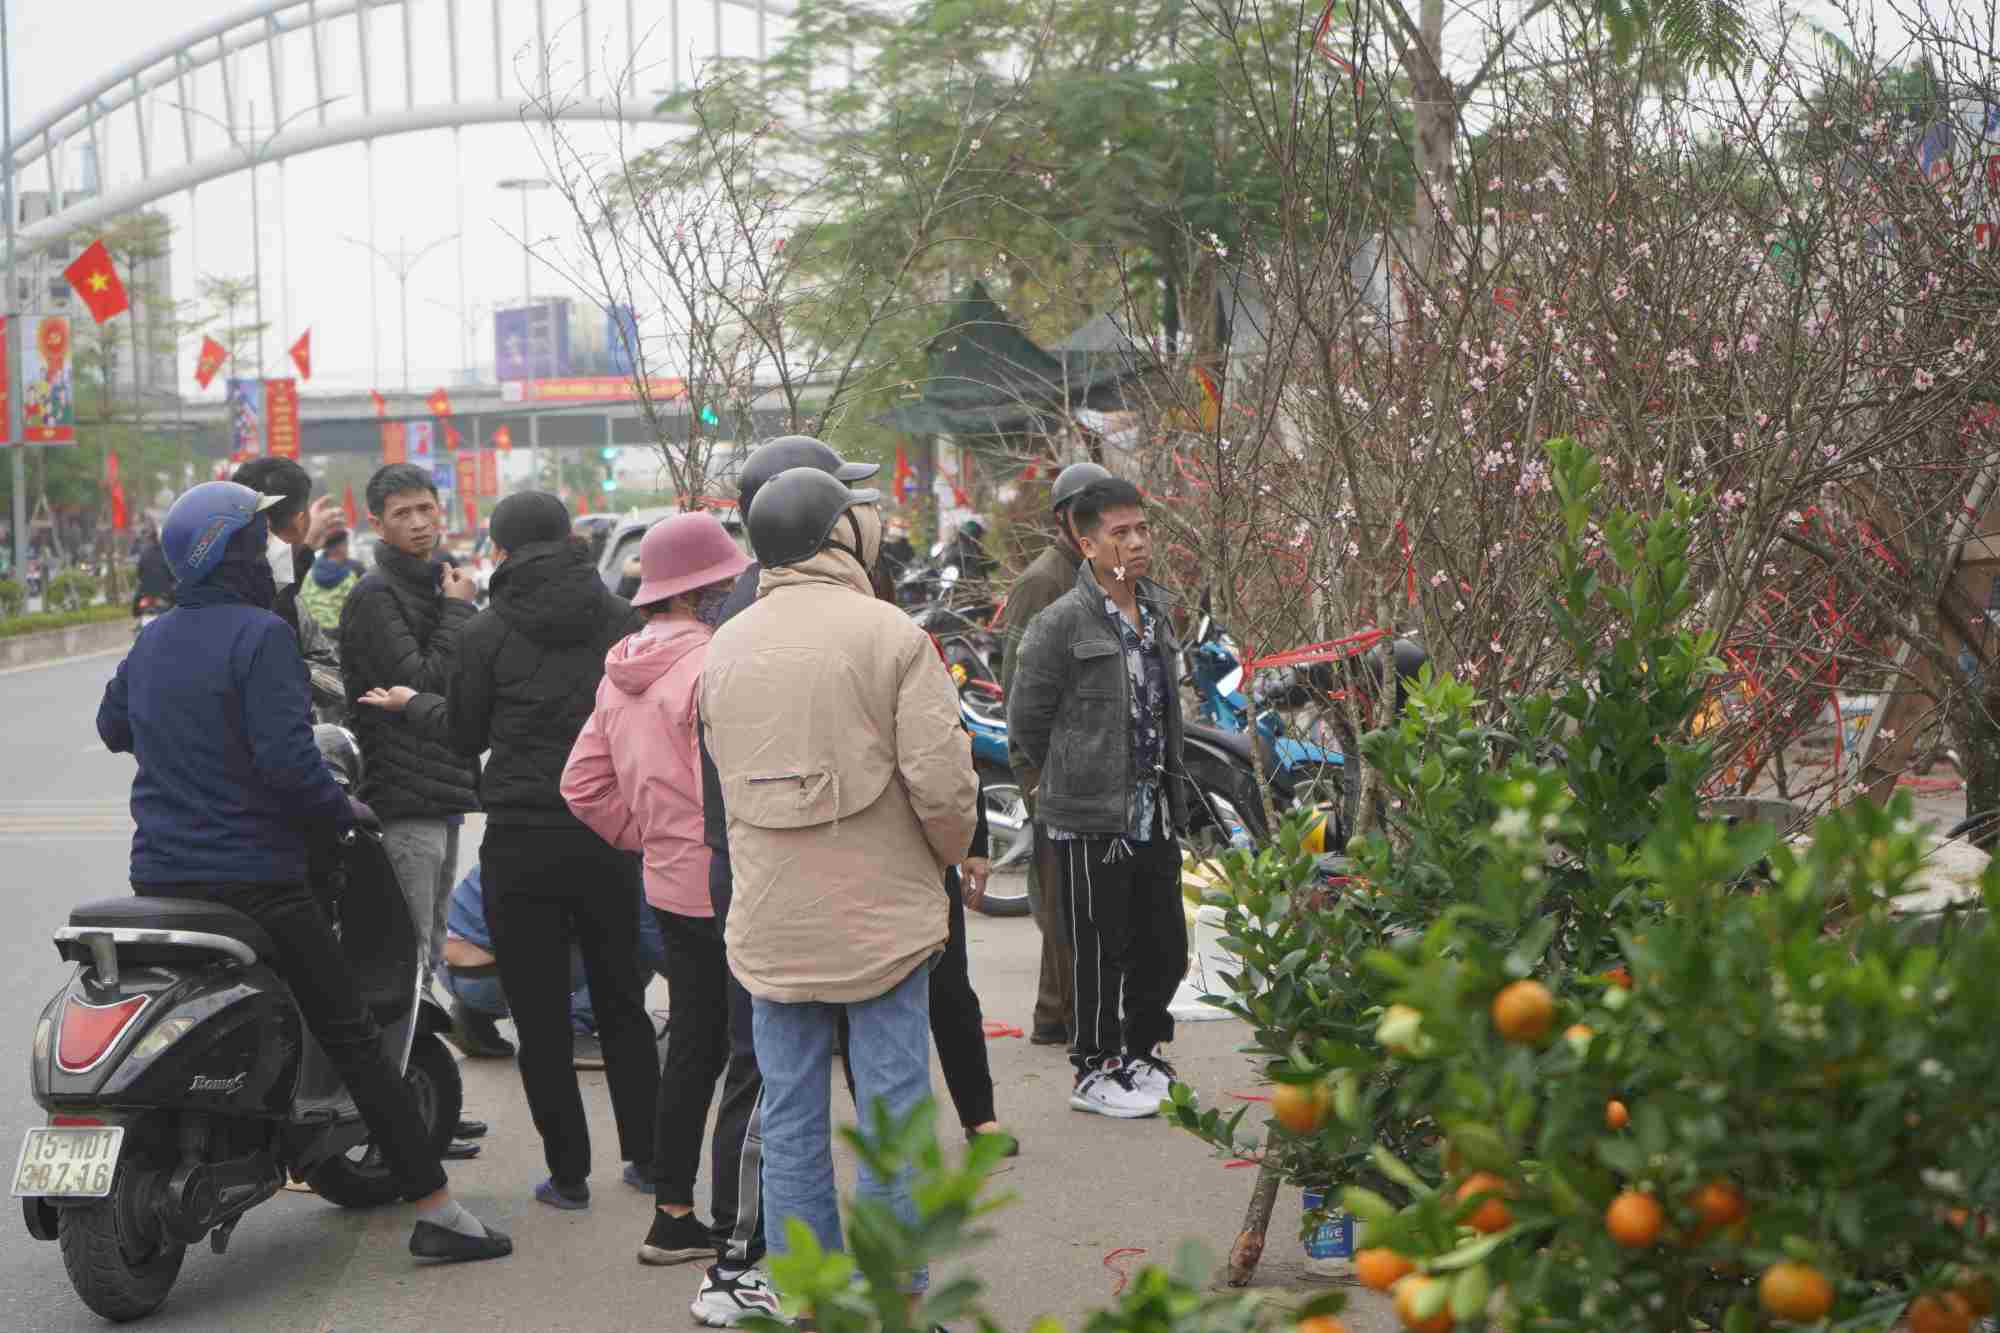 Ghi nhận của PV Lao Động, trưa ngày 7.2 (tức 28 Tết), chợ hoa Tết trên phố Hồ Sen đông đúc. Nhiều người tranh thủ buổi trưa tìm mua những chậu đào, quất trưng dịp Tết. 